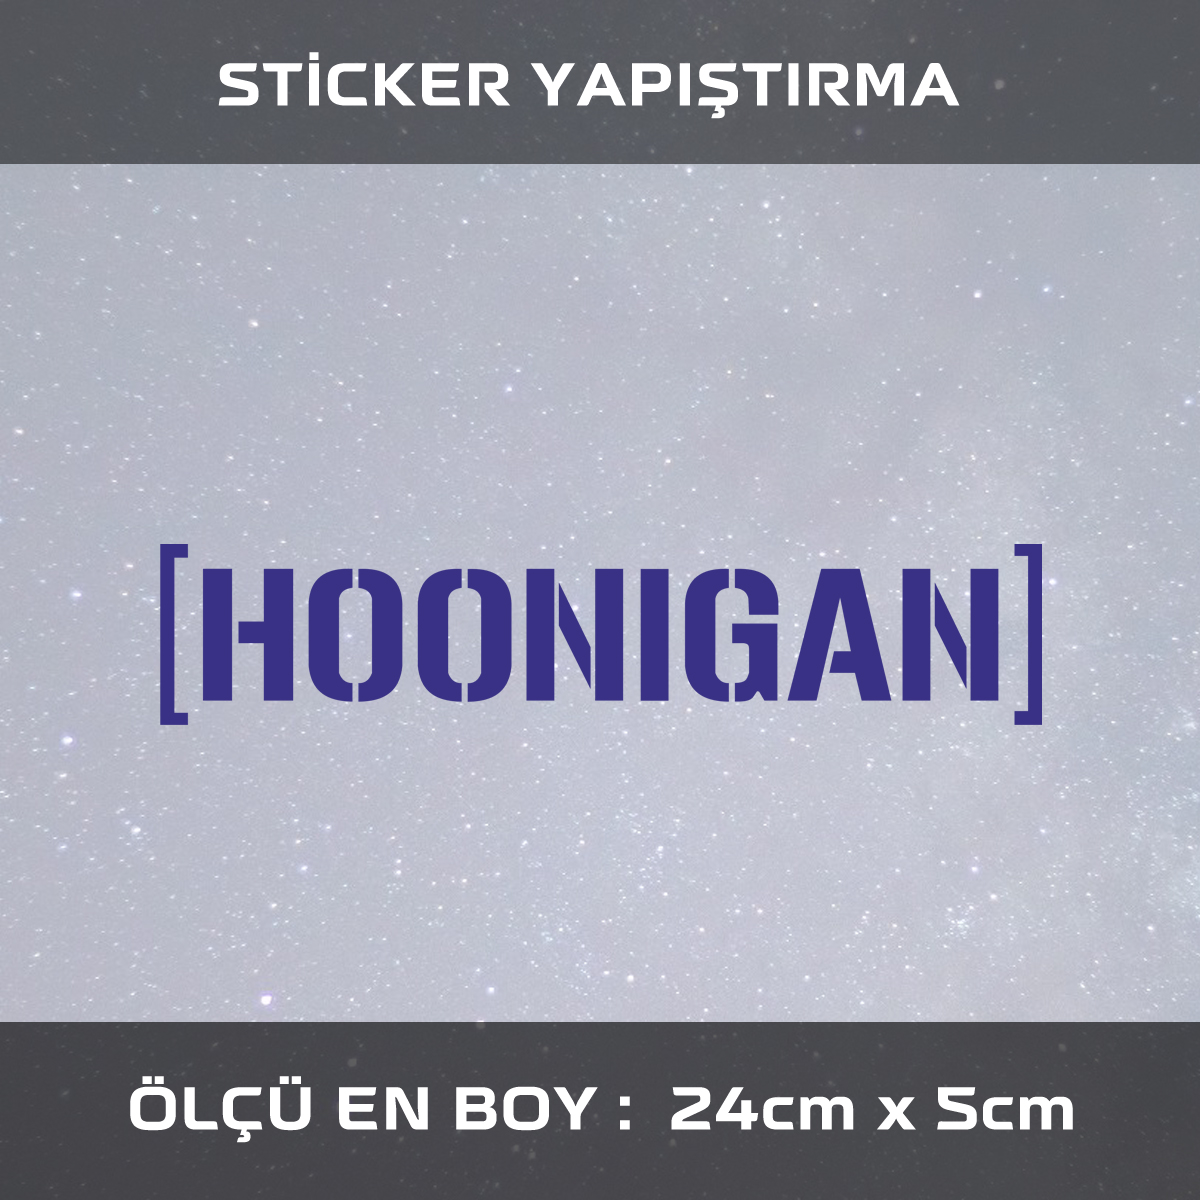 honnigan sticker 1 - Hoonigan - araba çıkartması etiket sticker